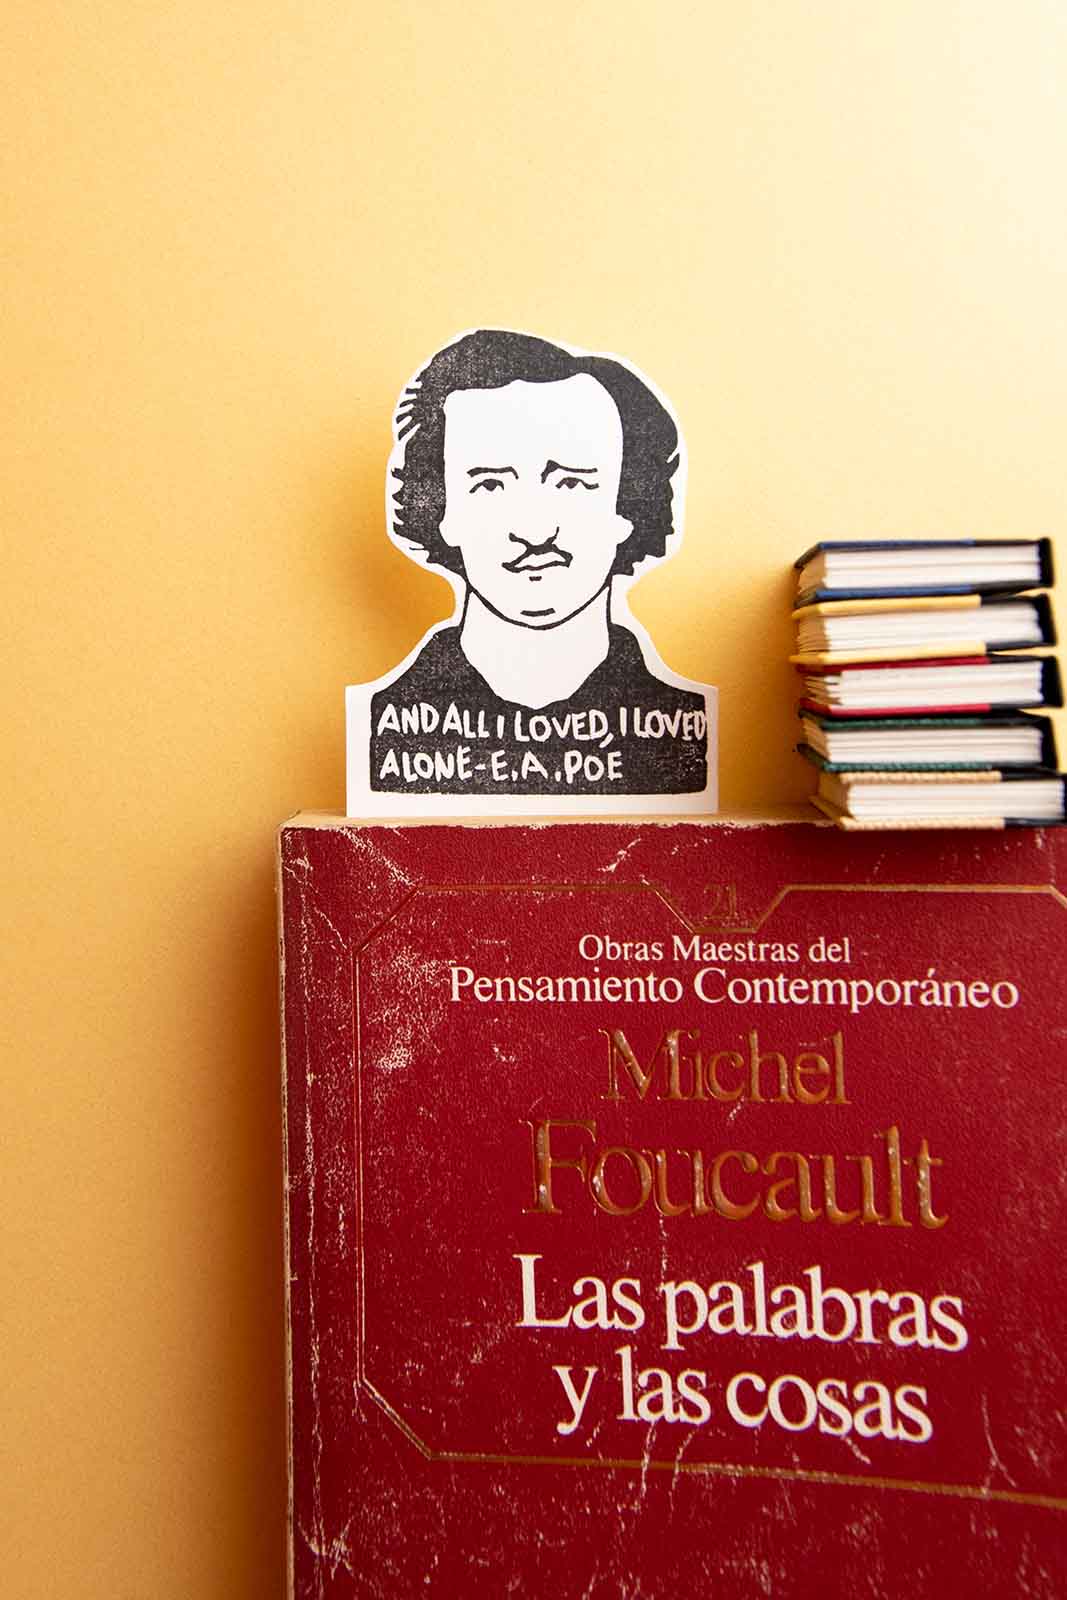 A Marcapáginas Edgar Allan Poe se encuentra sobre un libro rojo titulado "Michel Foucault y las cosas" con una burbuja que dice "y todo lo que amé, amé solo - E de Les Tampons de Roser.